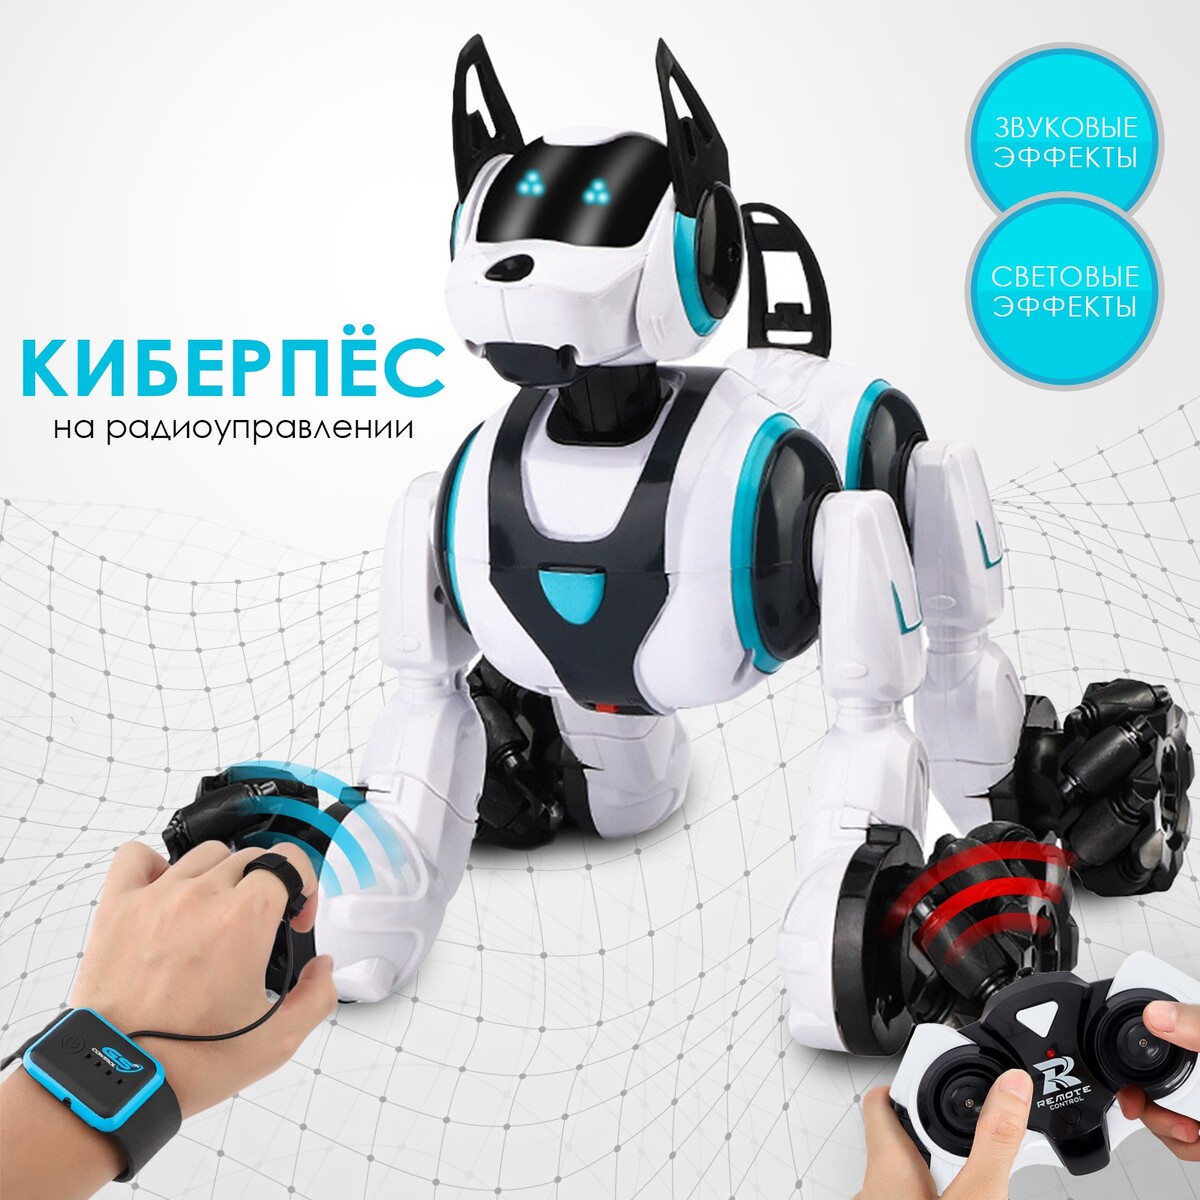 Робот собака stunt, на пульте управления, интерактивный: звук, свет, на аккумуляторе, белый интерактивный робот